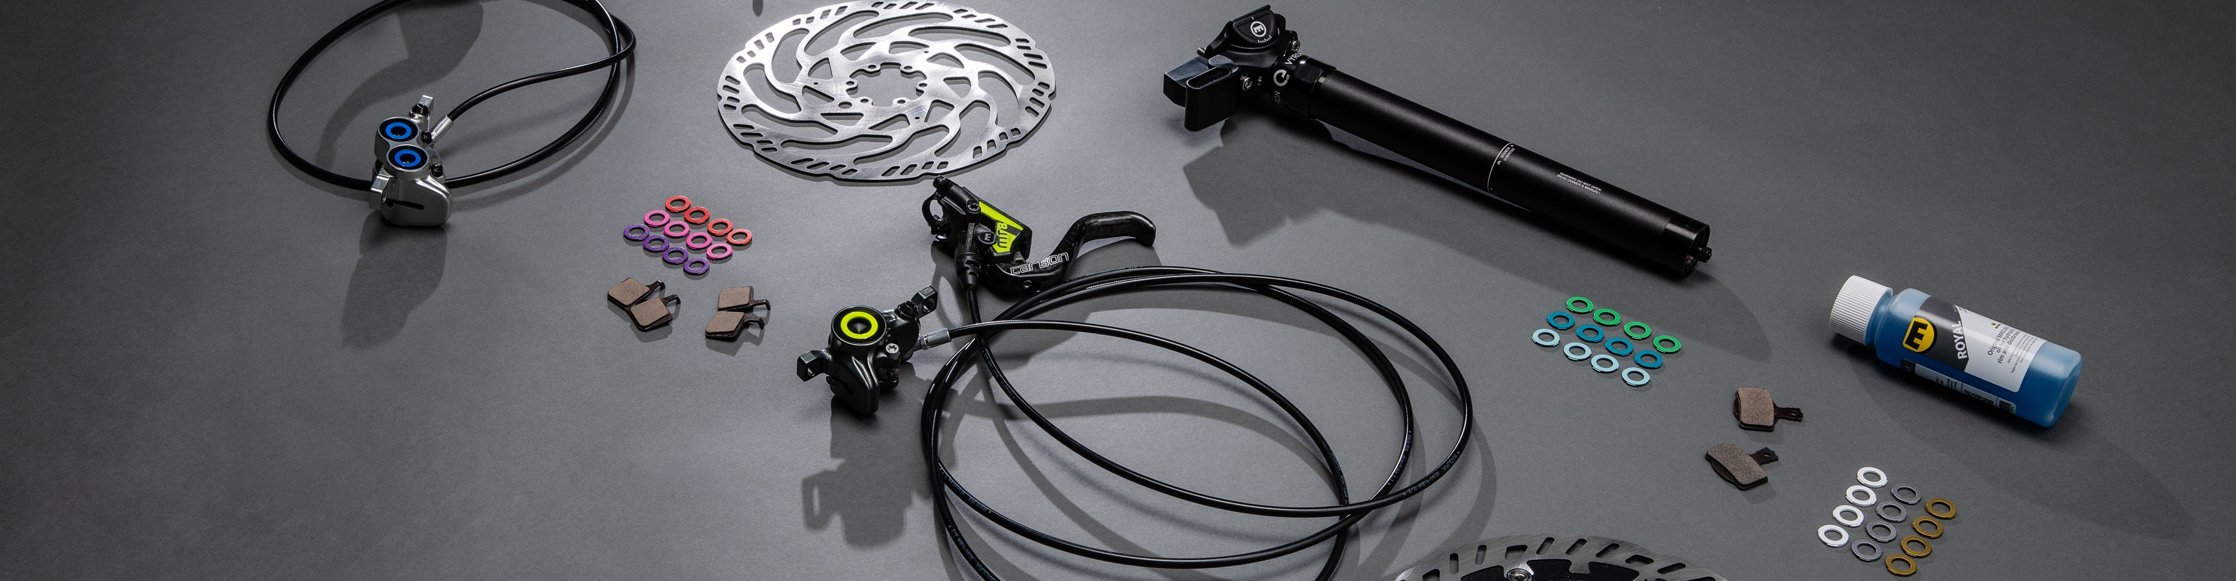 Magura ergonomische Fahrradbremsen, customize your breake, Bremsscheiben, ergonomische Bremgriffe, Sammelbild